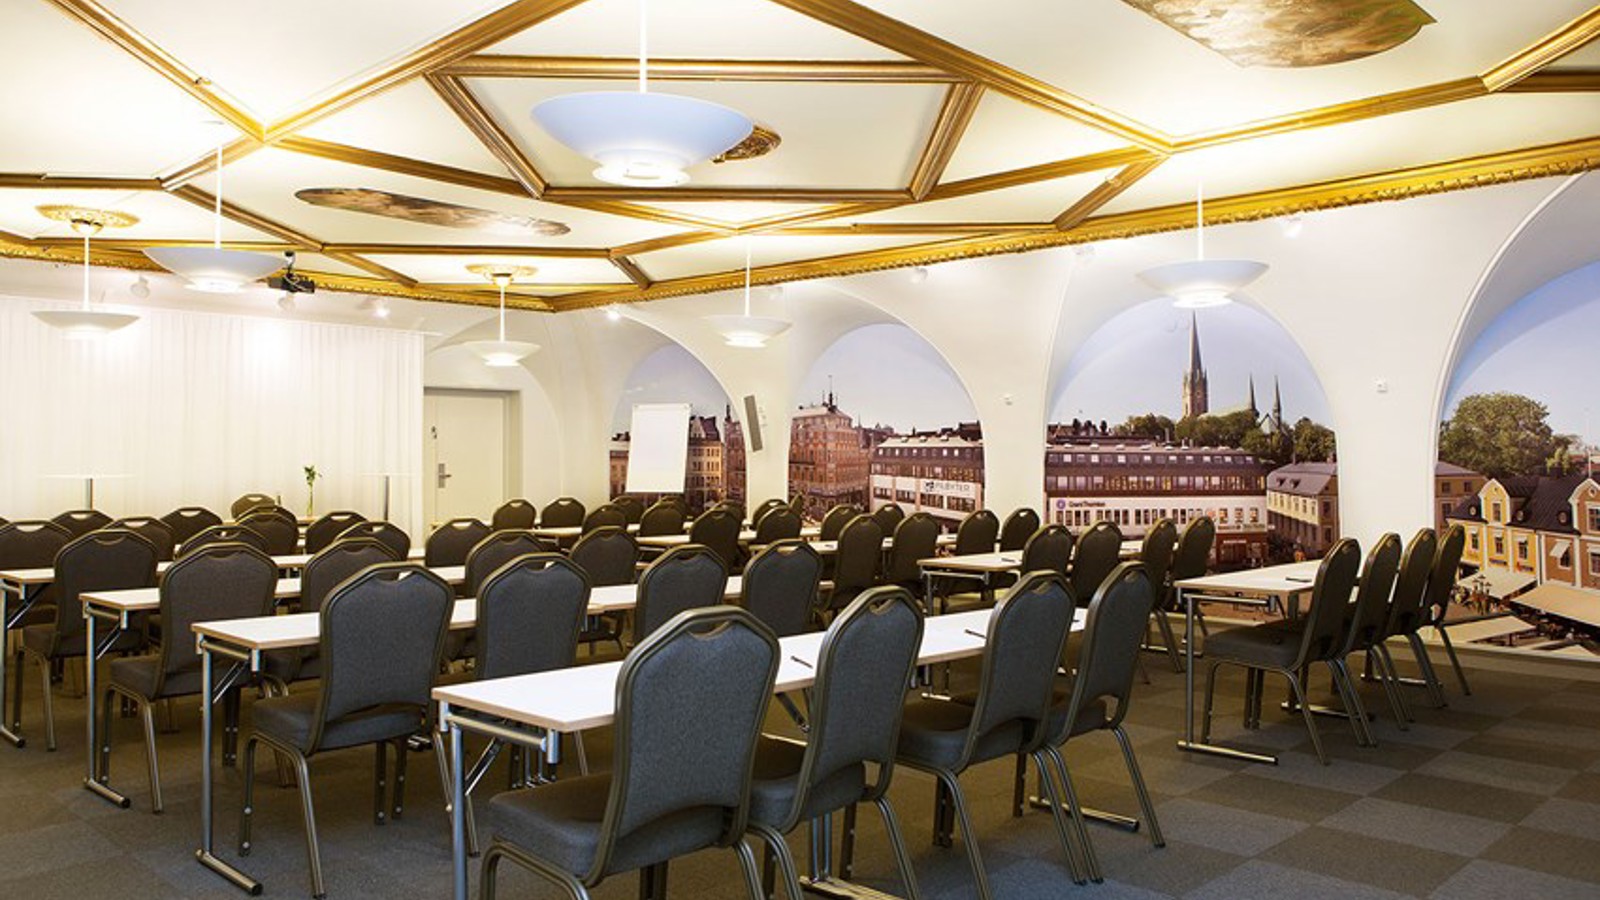 Stort konferensrum med skolsittning, upplyst tak med gulddetaljer och mörkt golv